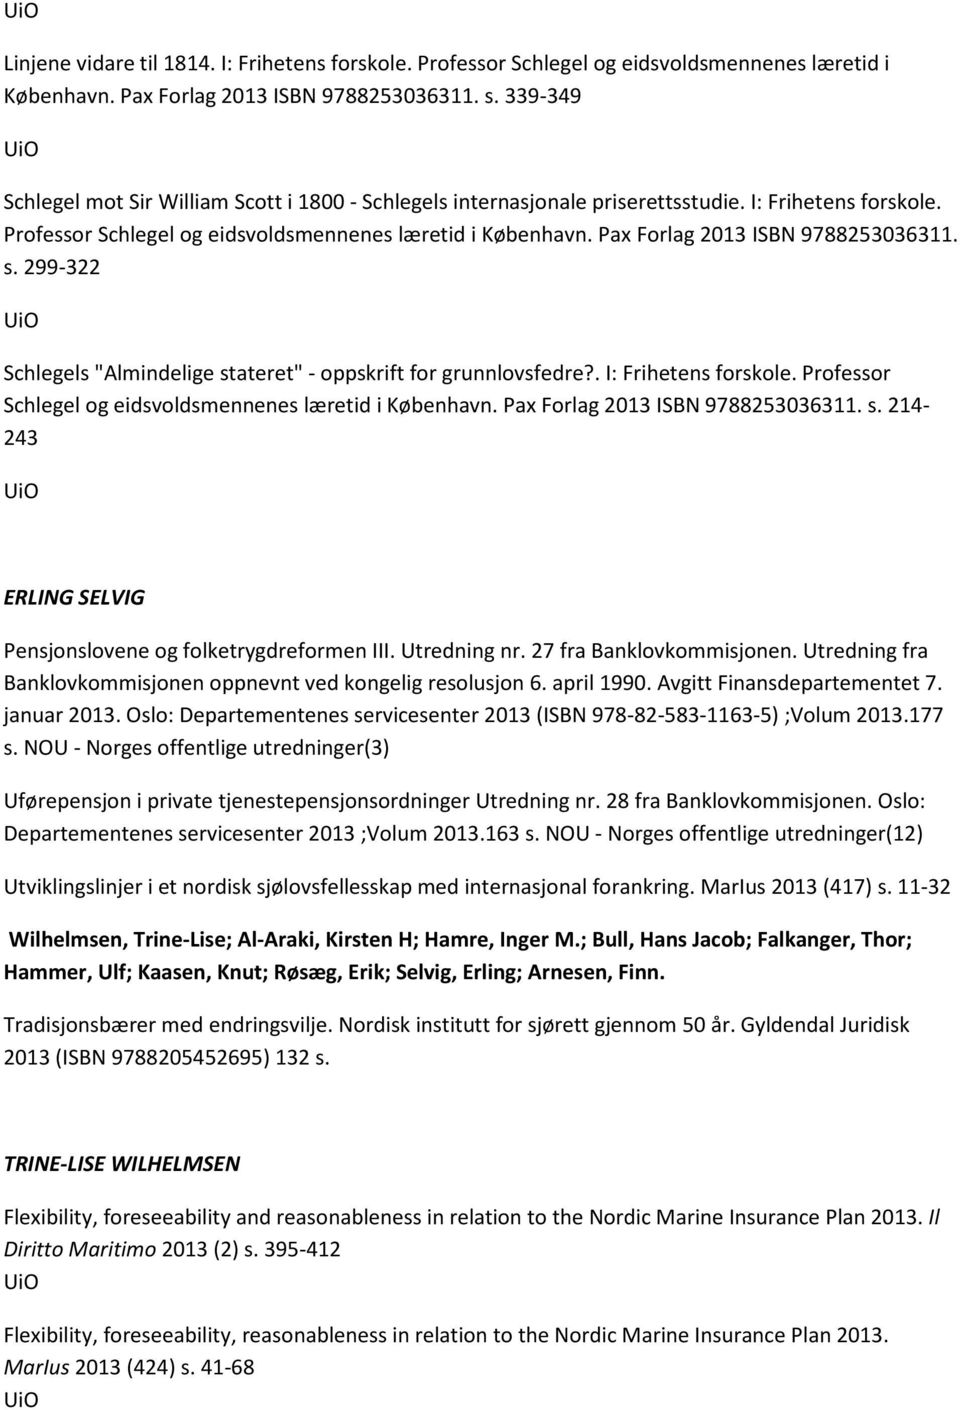 Pax Forlag 2013 ISBN 9788253036311. s. 299-322 Schlegels "Almindelige stateret" - oppskrift for grunnlovsfedre?. I: Frihetens forskole. Professor Schlegel og eidsvoldsmennenes læretid i København.